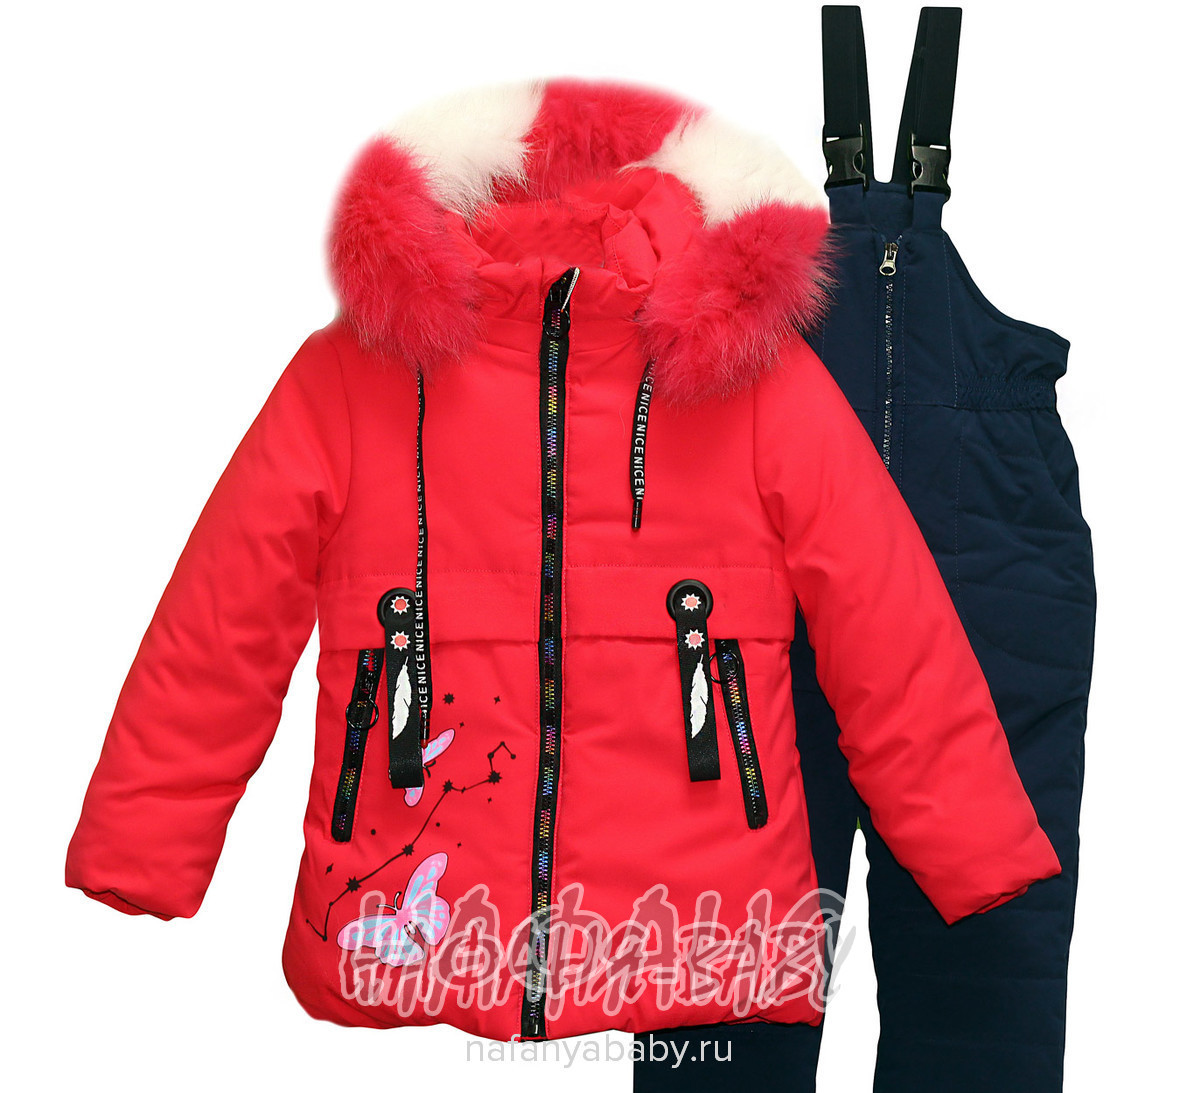 Зимний комплект (куртка+полукомбинезон) JIA XIN, купить в интернет магазине Нафаня. арт: 825.